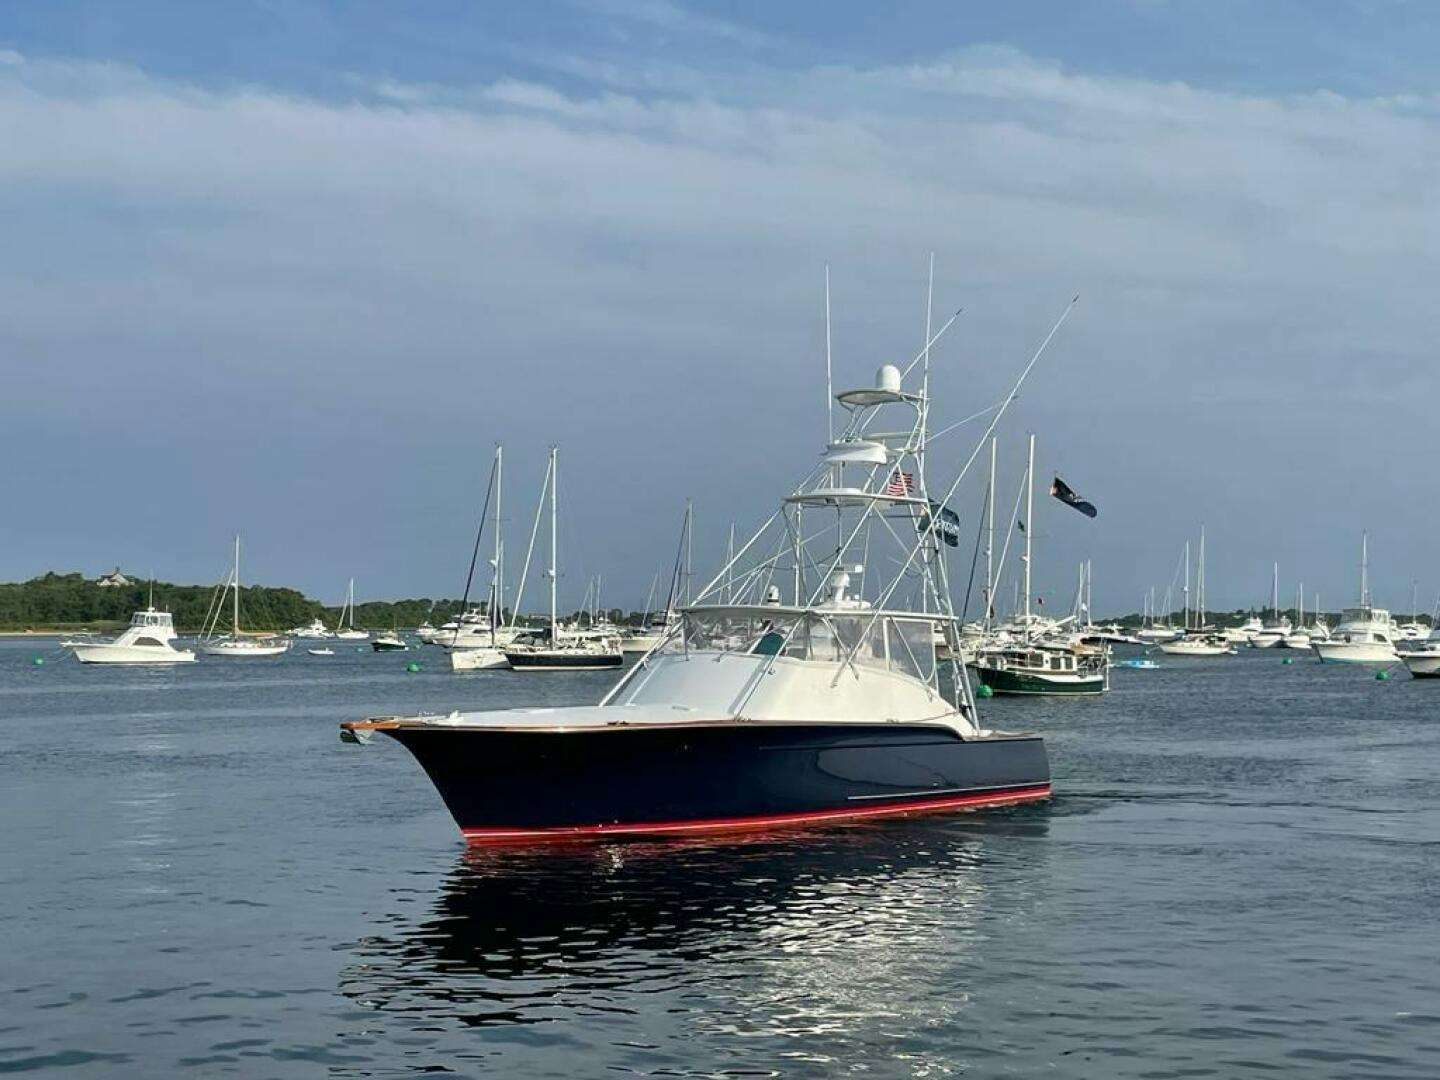 REEL RHINO Yacht for Sale in Rhode Island